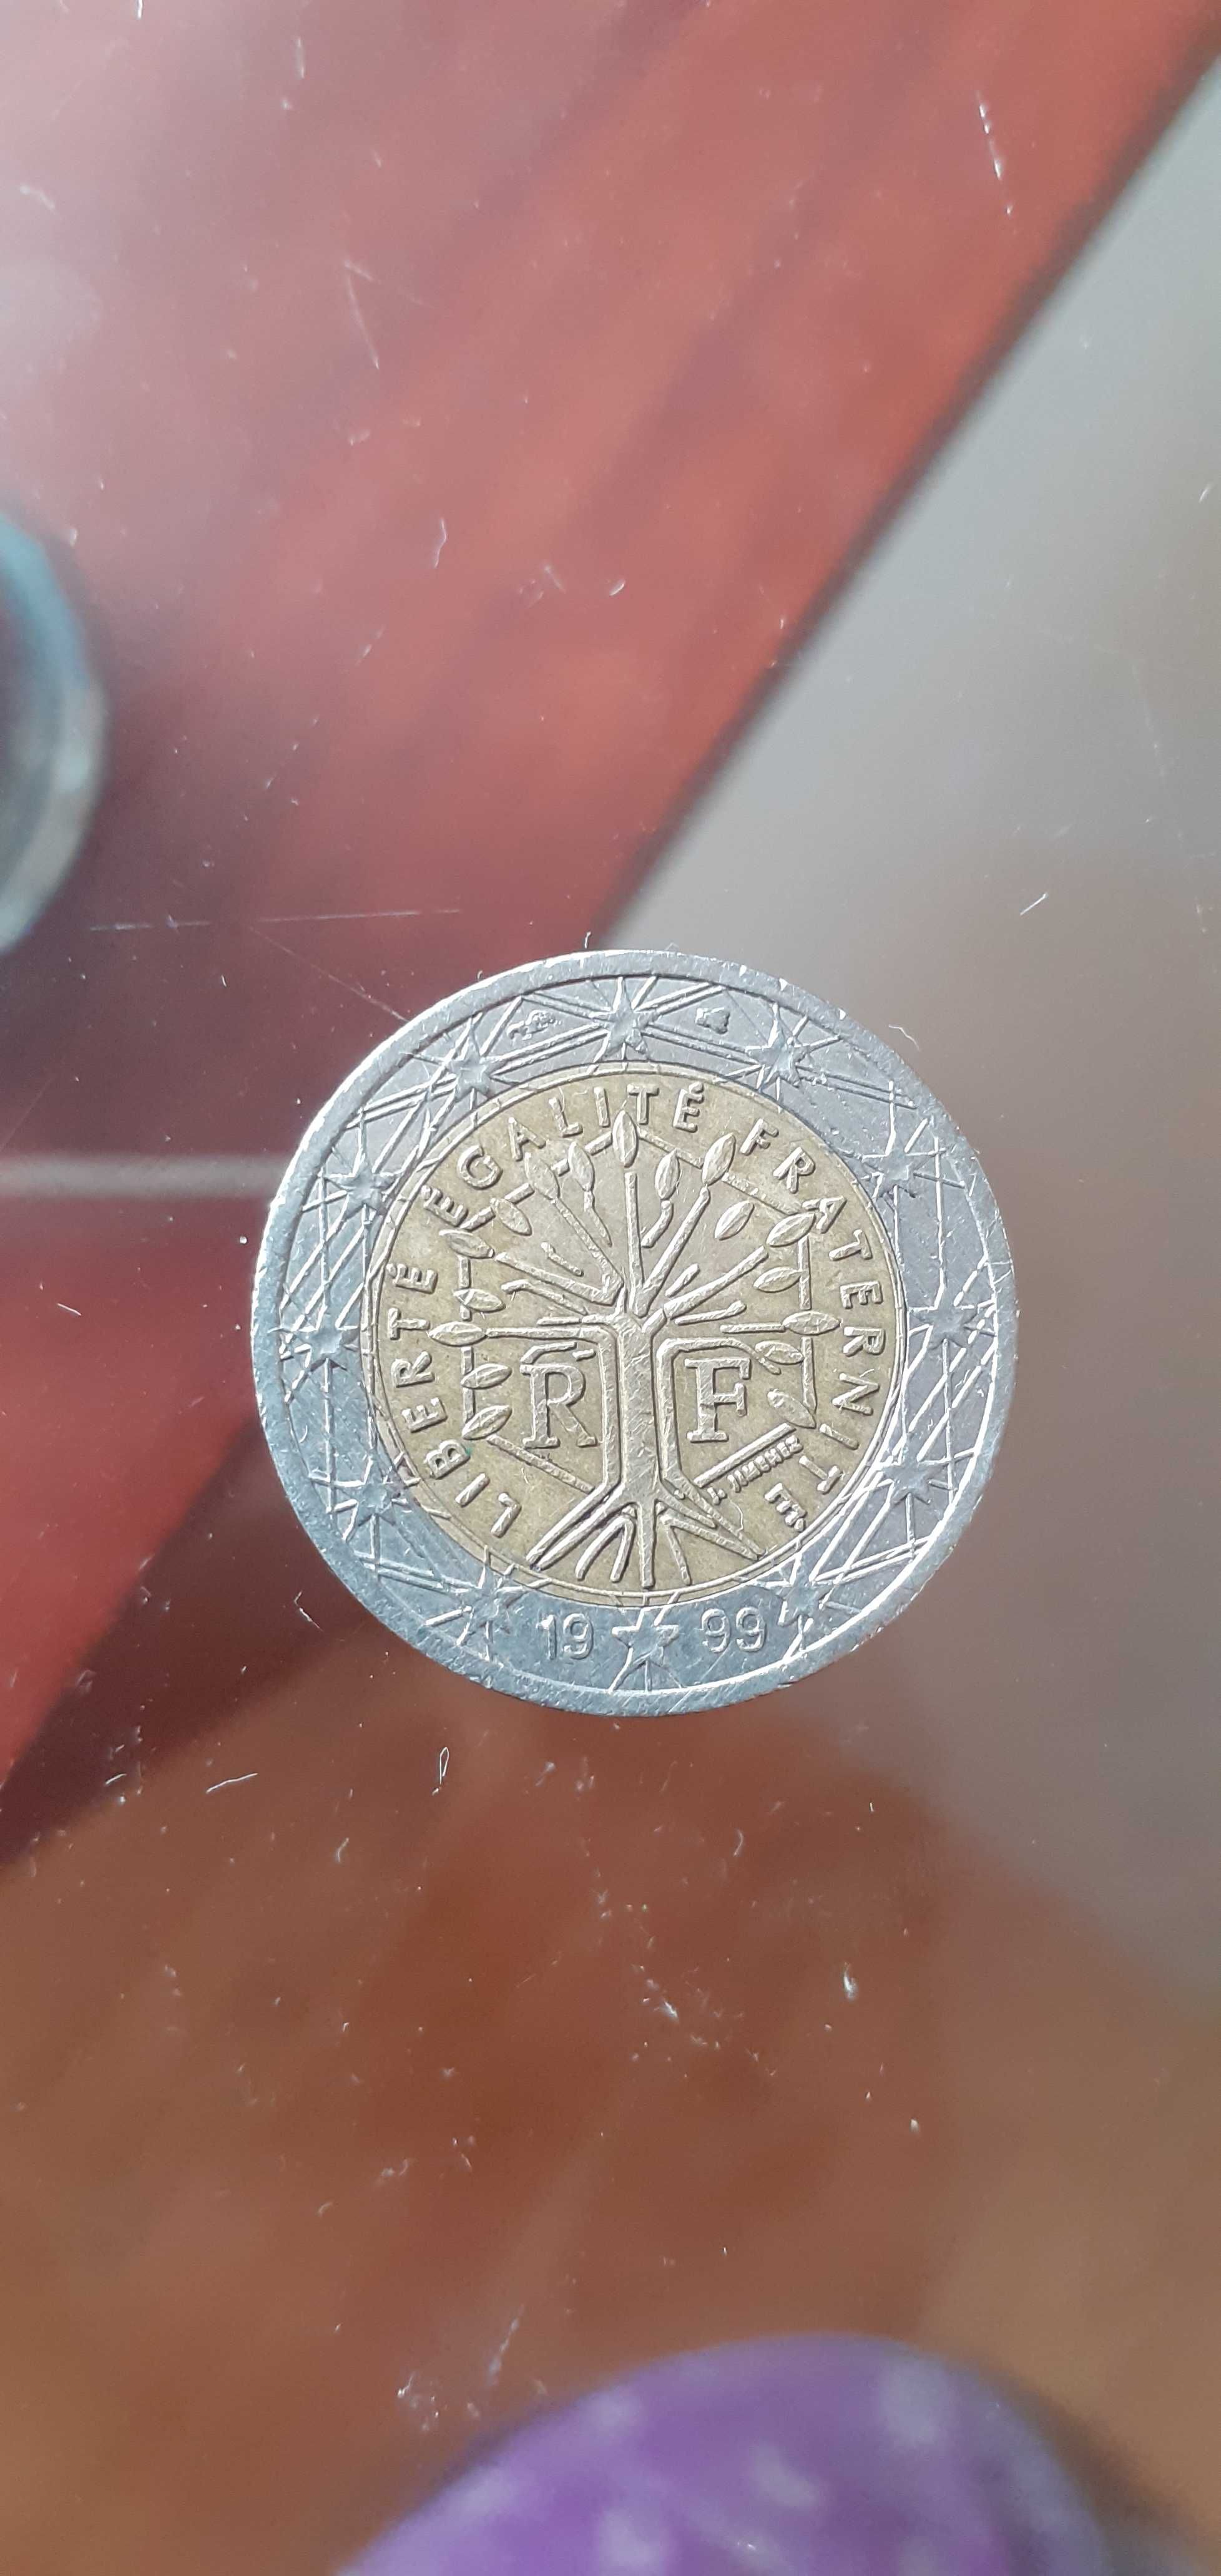 Vand moneda 2€, an 1999